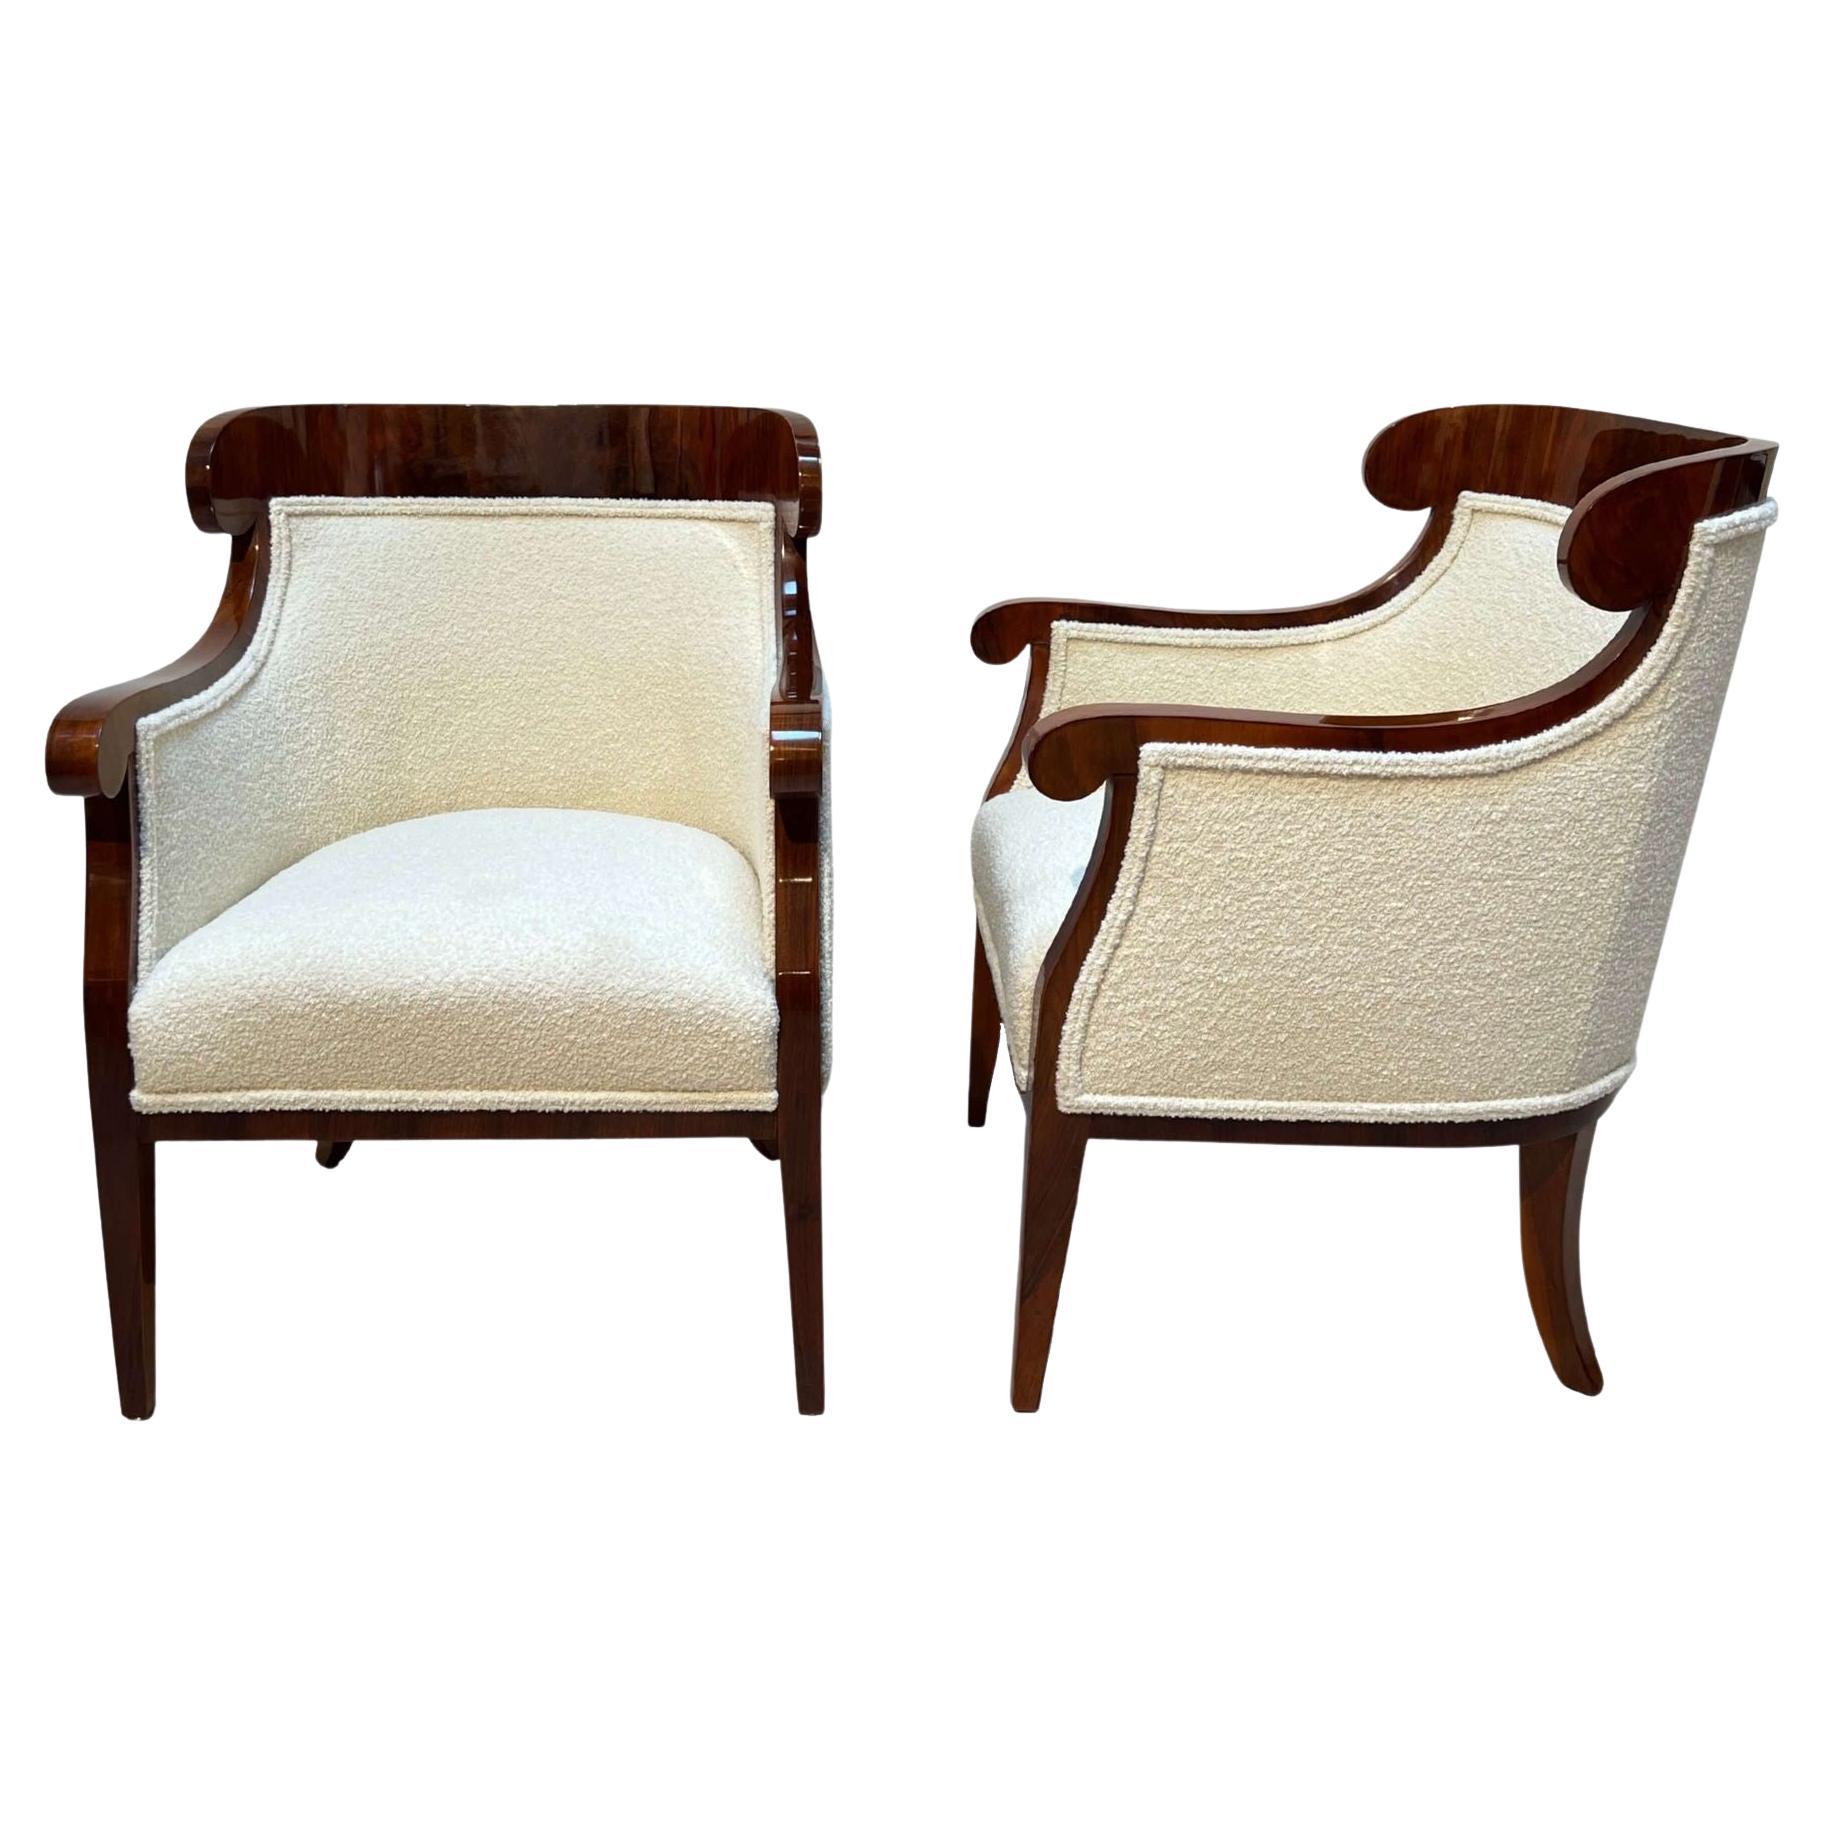 Pair of Biedermeier Bergere Chairs, Walnut, Bouclé, Austria, Vienna, Circa 1860